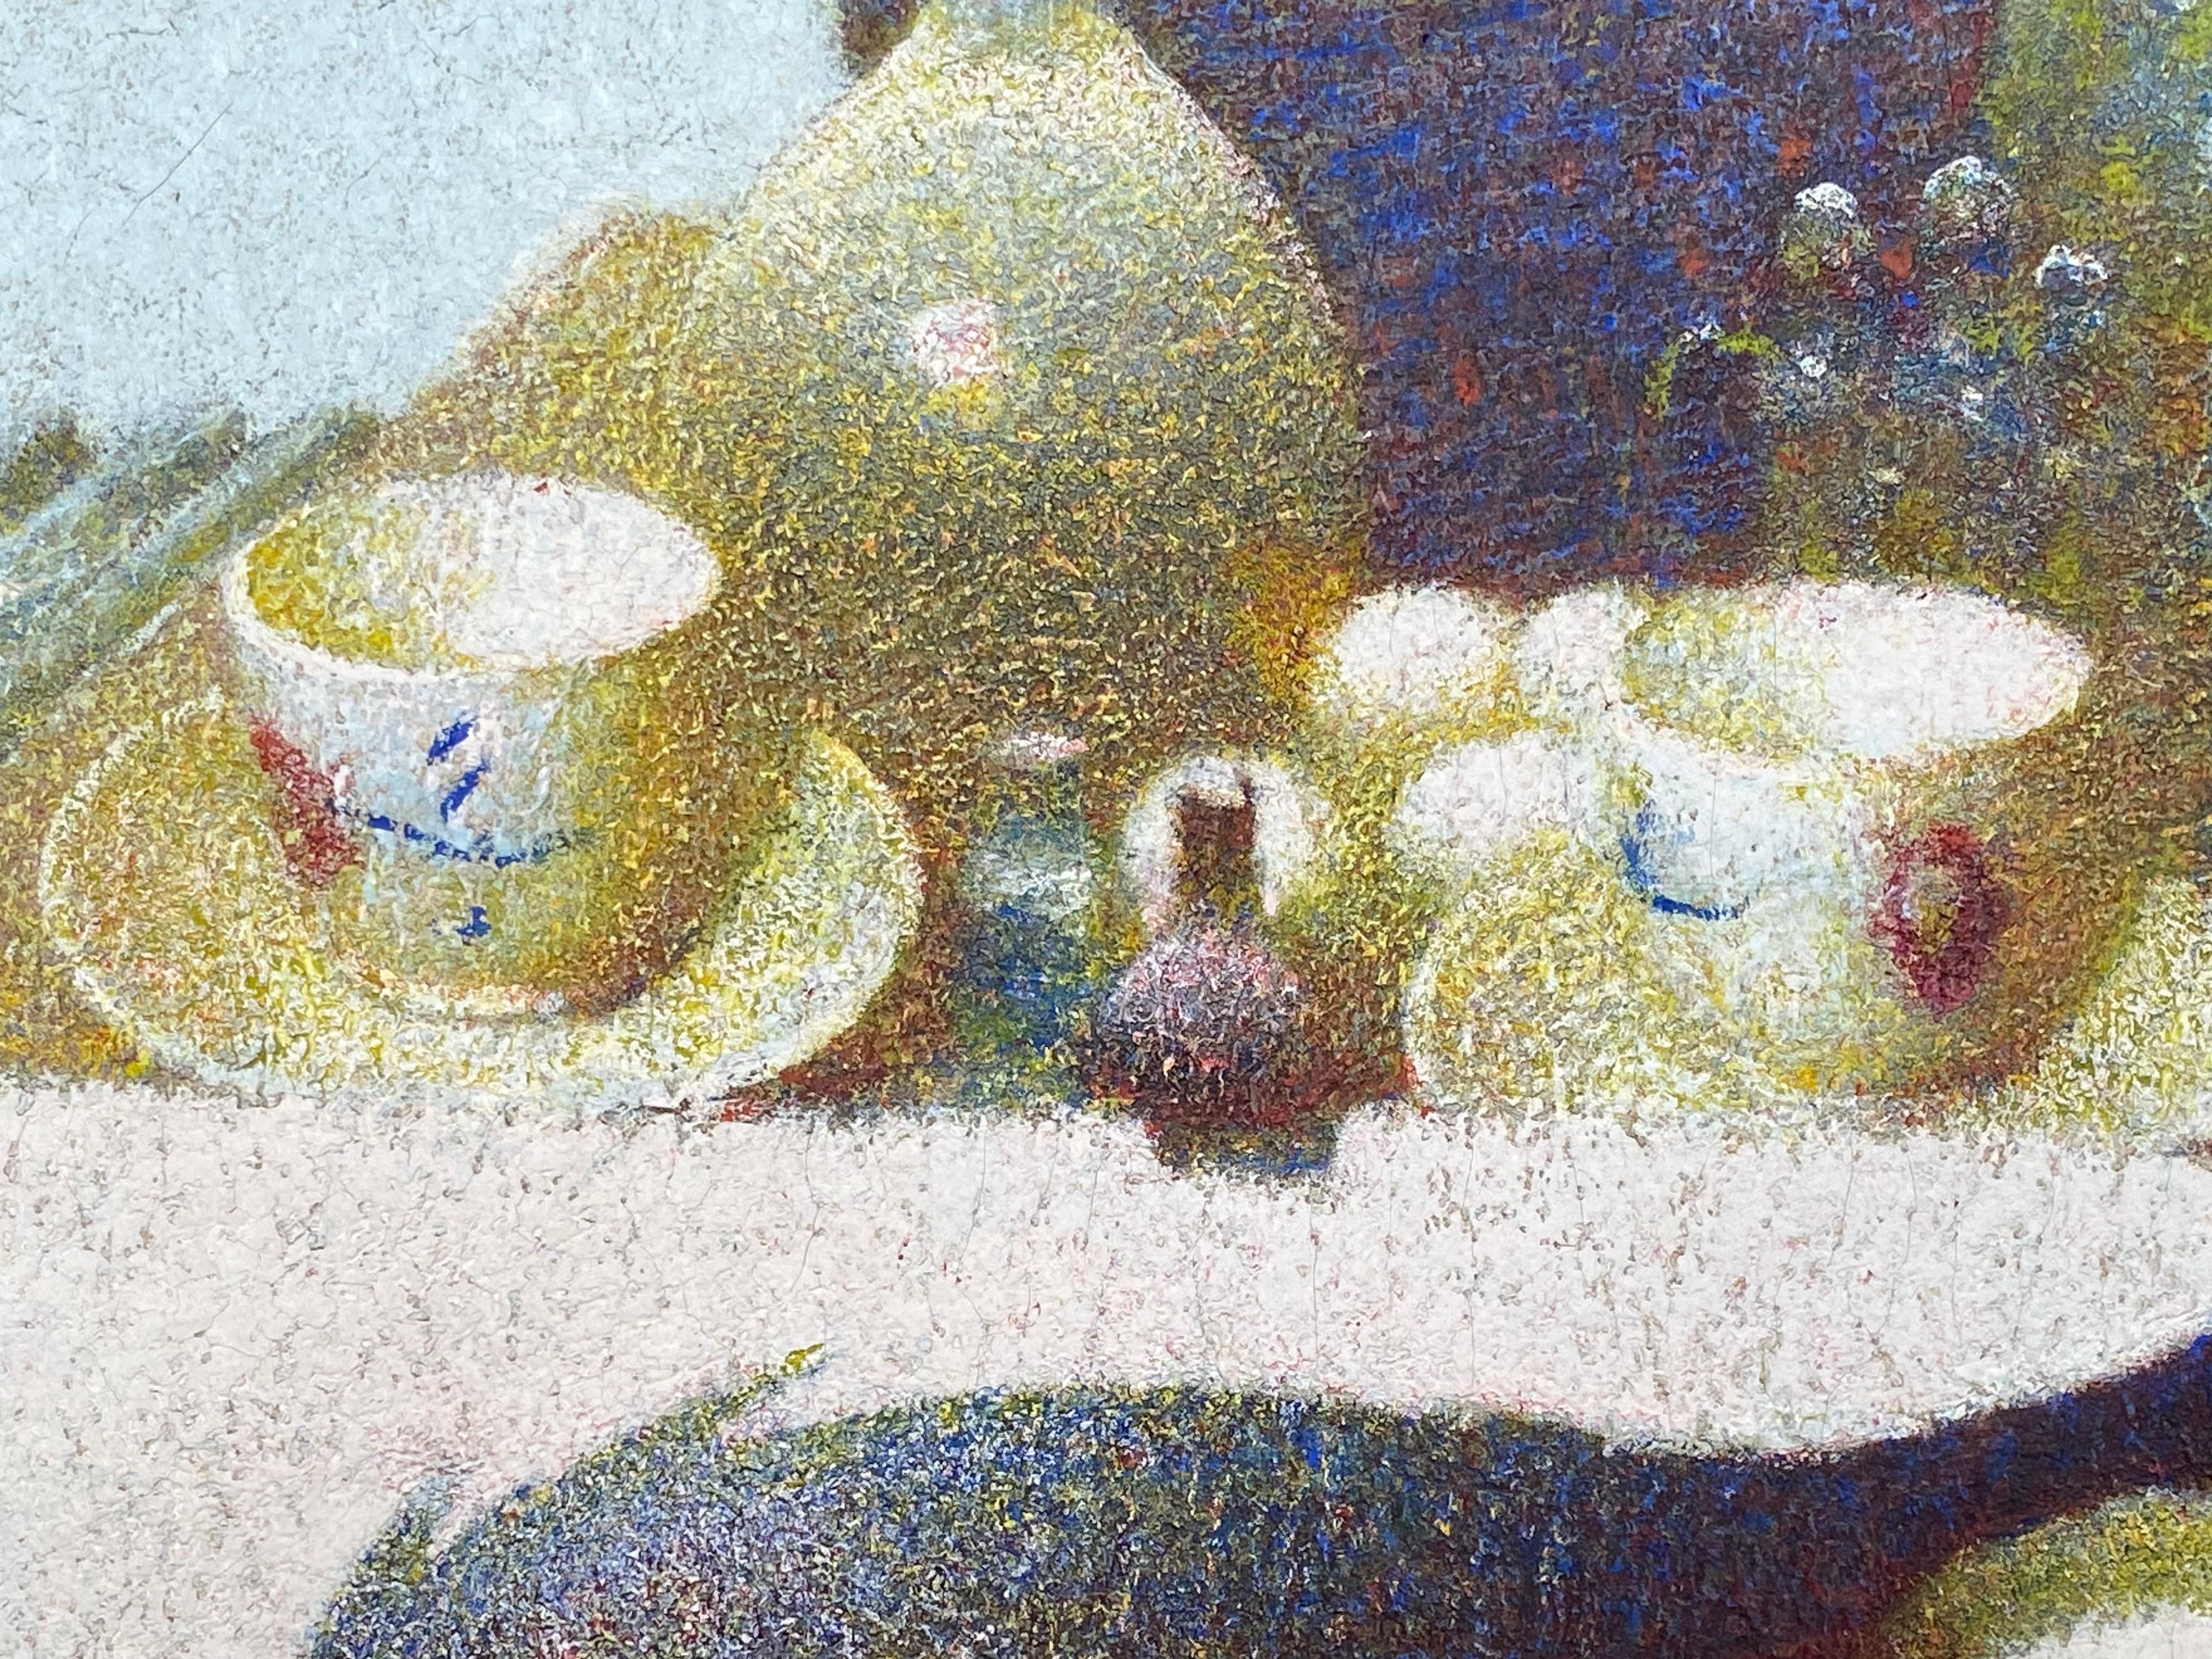 Dans Ducks in the Studio, Schmitt révèle l'influence des impressionnistes et des pointillistes en adoptant leurs couleurs vives et pures. Cependant, il a choisi de ne pas peindre avec de petits points, mais plutôt avec de petits points de type